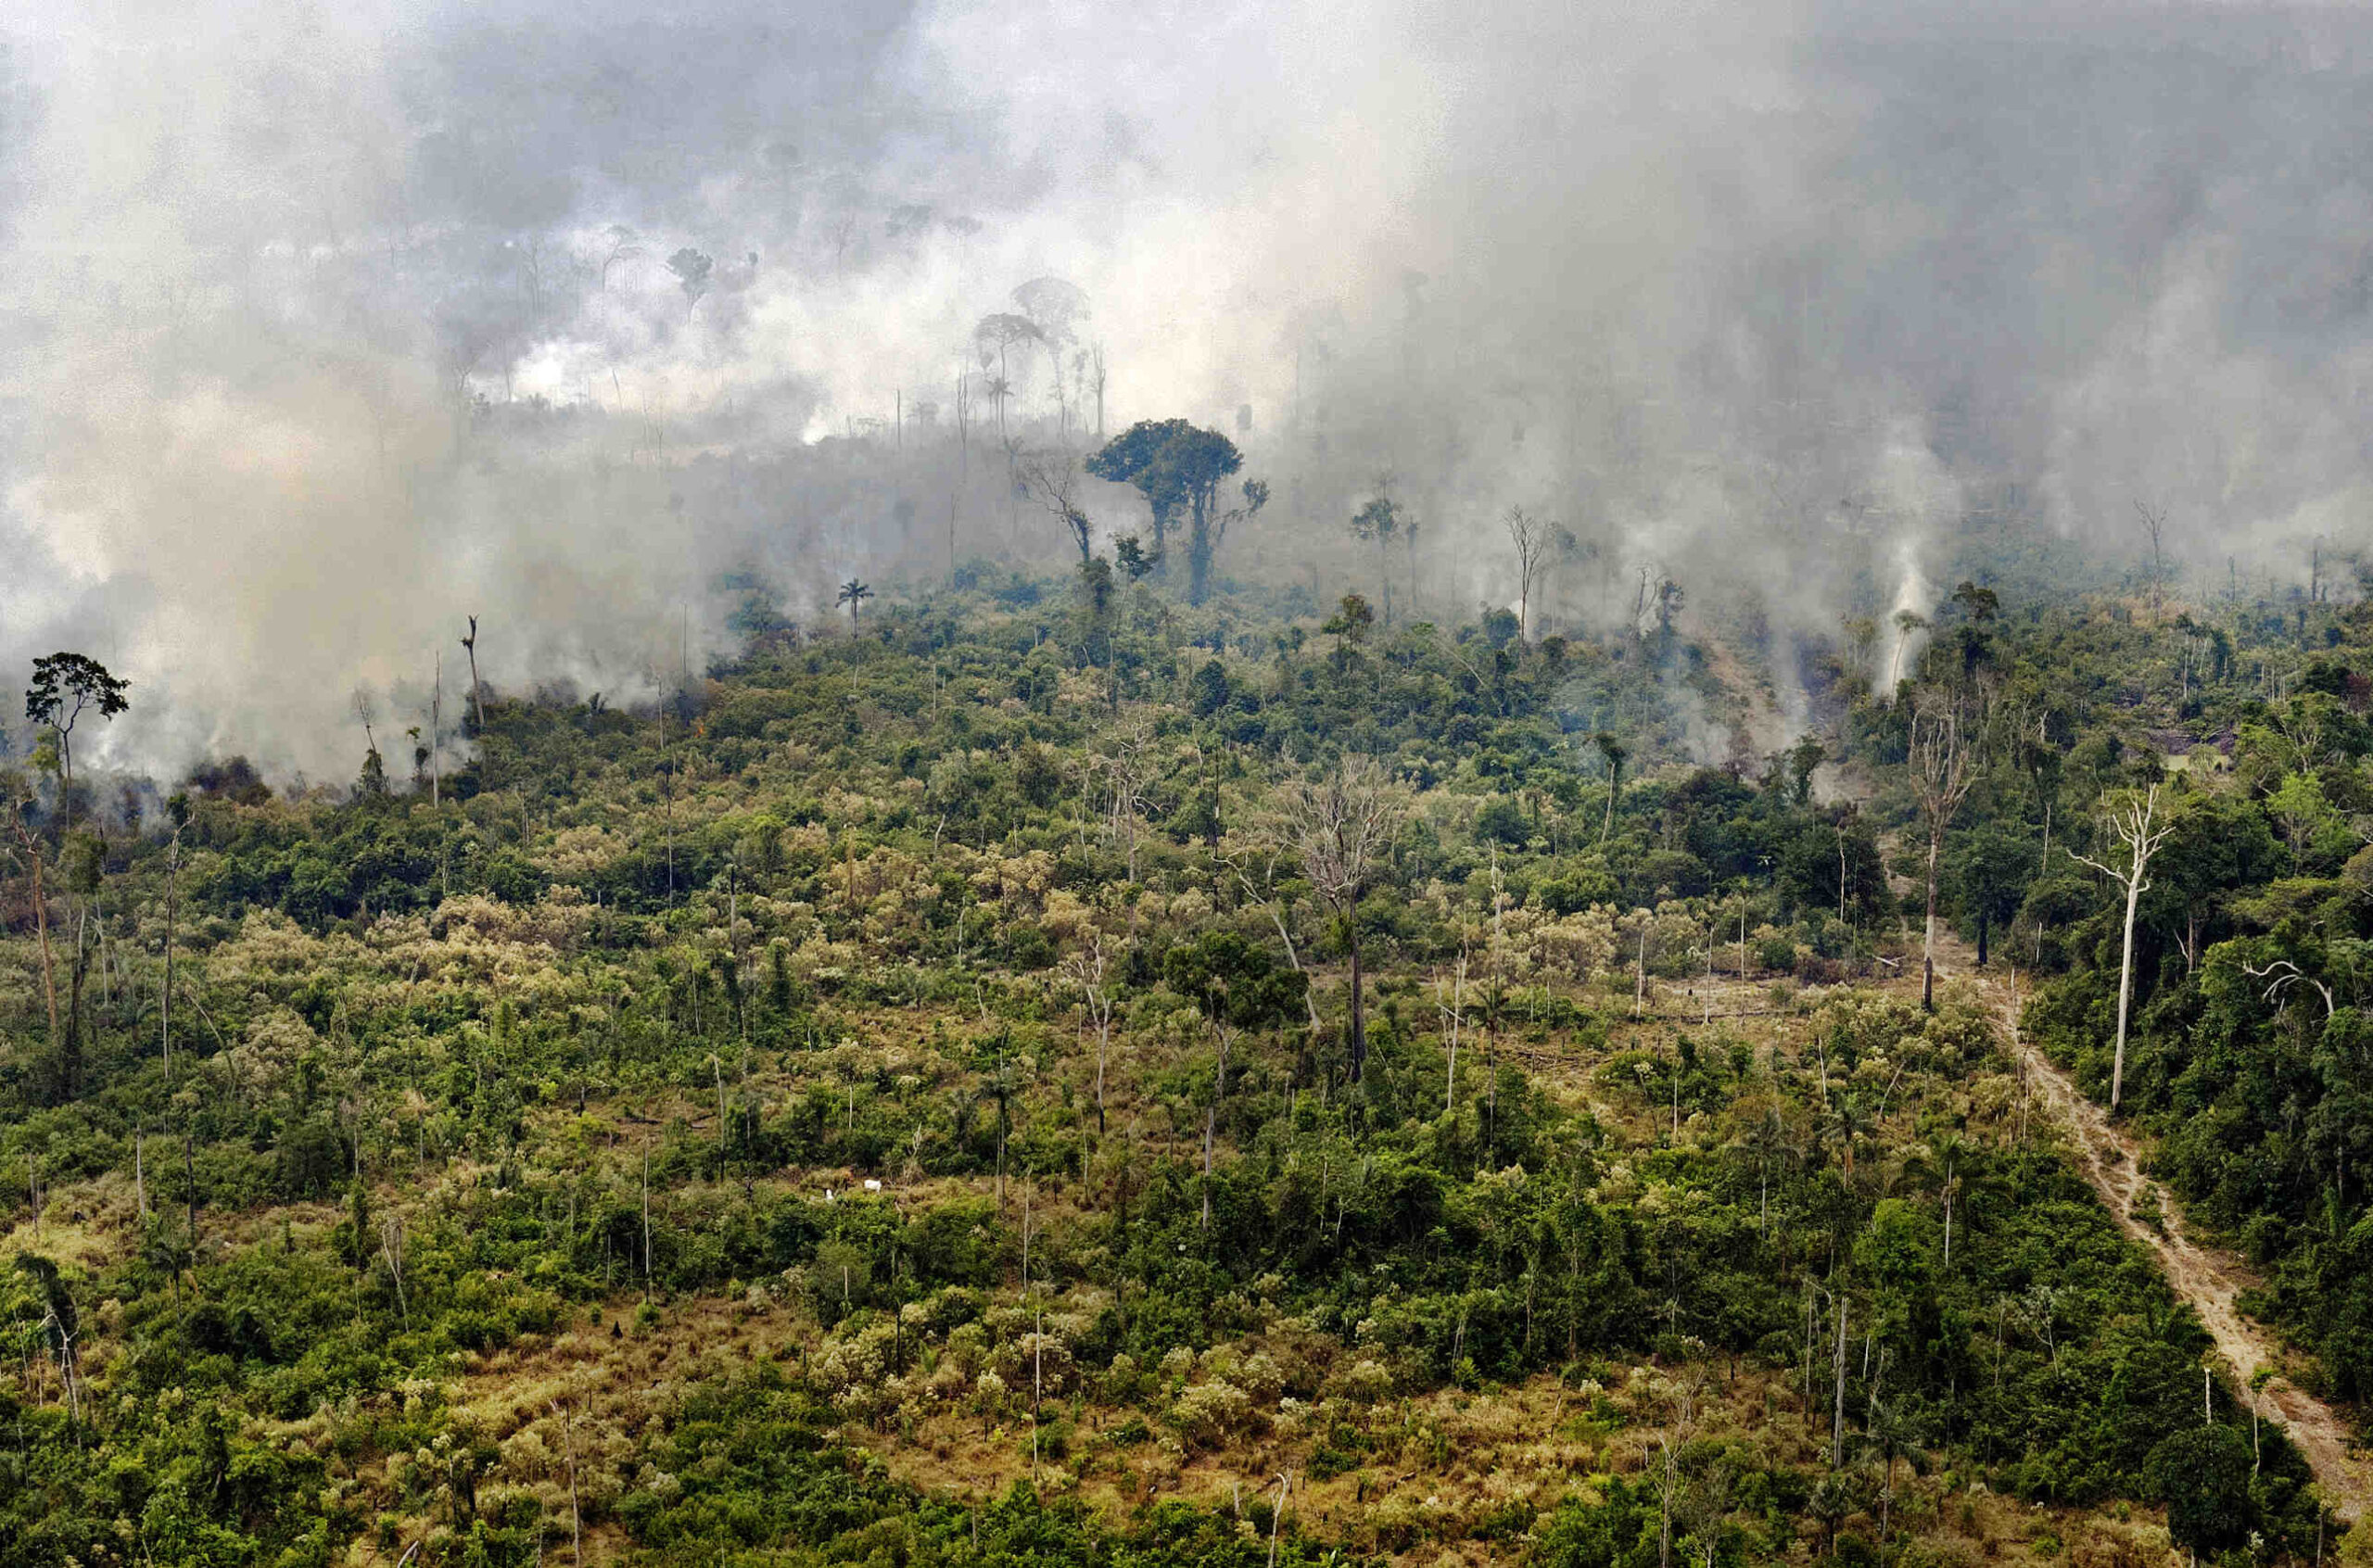 Quels sont les dangers qui menacent la forêt?